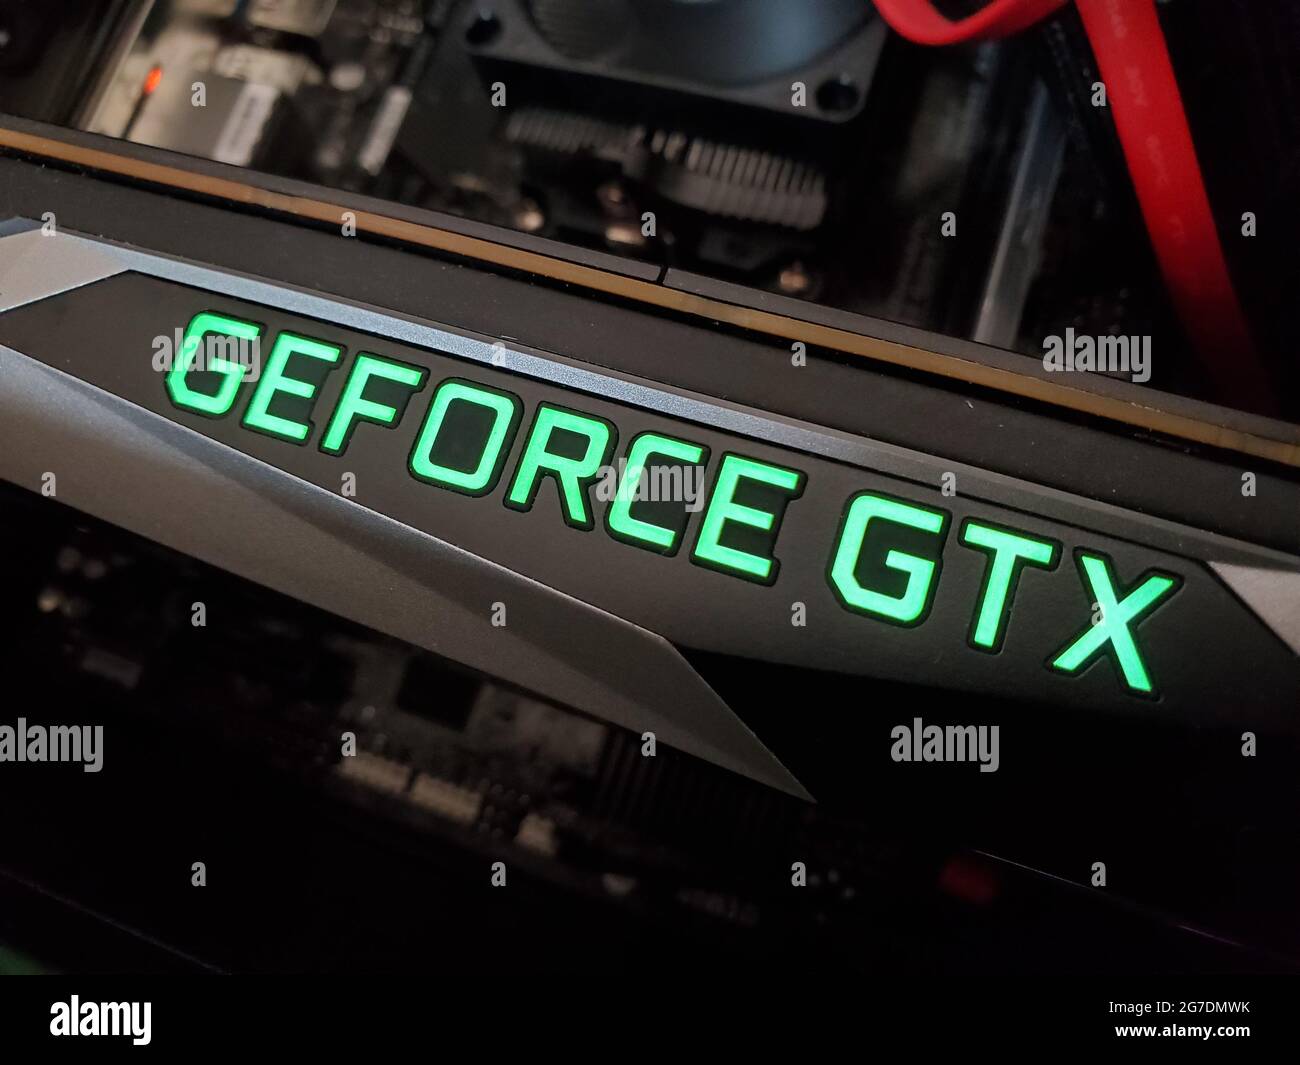 Gros plan d'un logo vert « GeForce GTX » sur une unité de traitement graphique (GPU) Nvidia GTX 1070, photographiée à Lafayette, Californie, le 2 avril 2021. () Banque D'Images